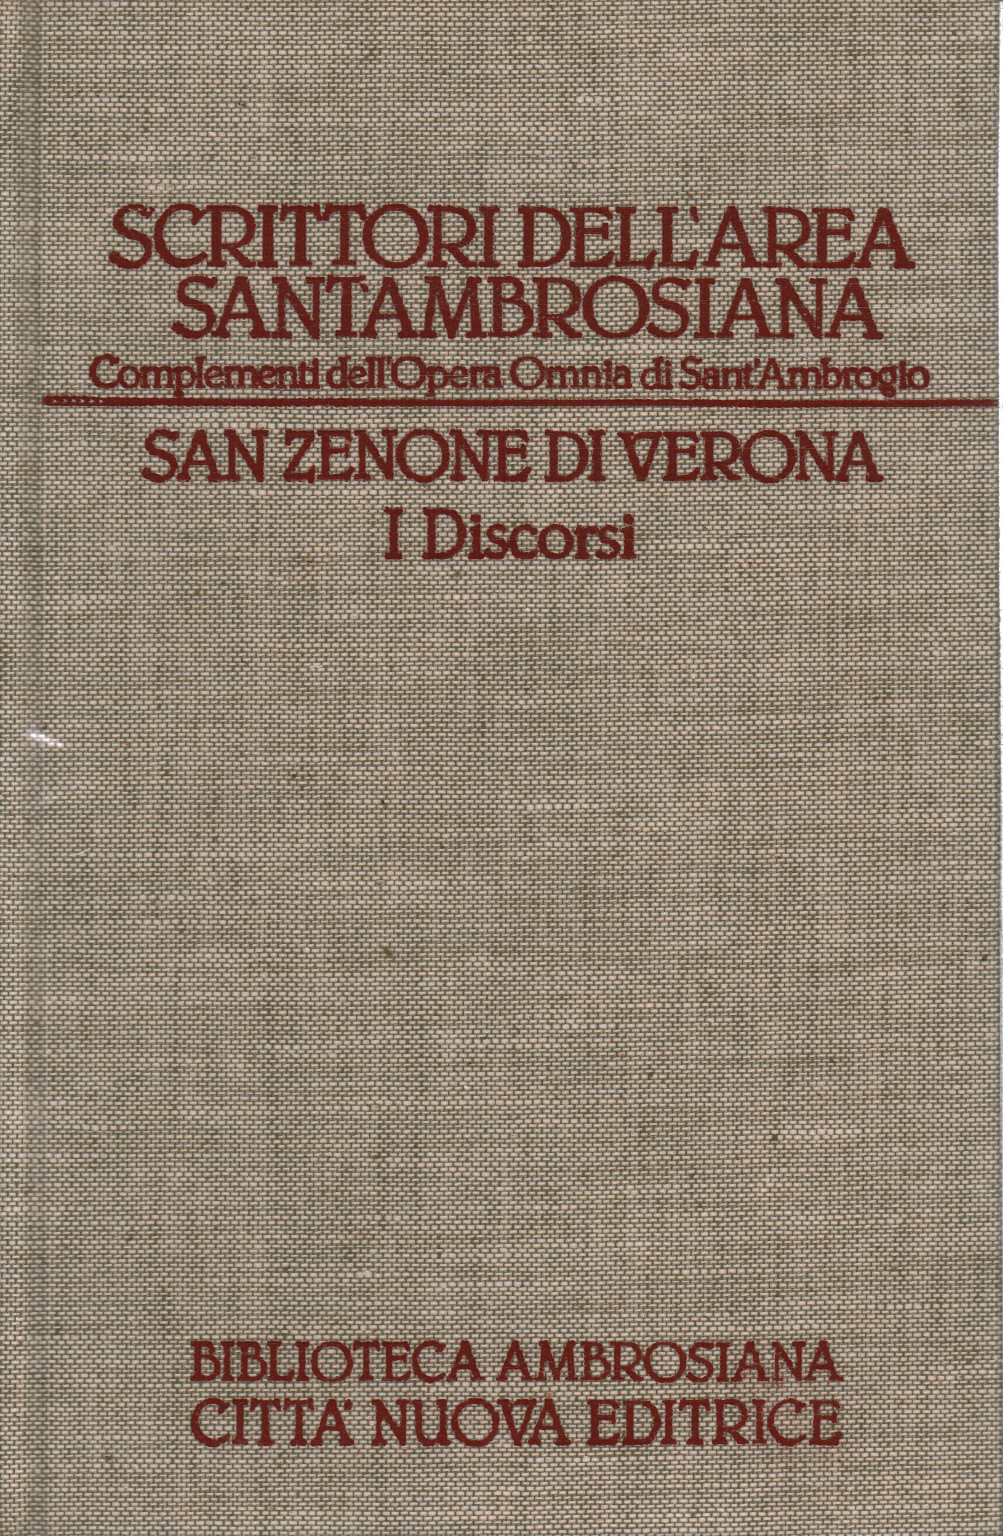 San Zenone de Verona. los discursos